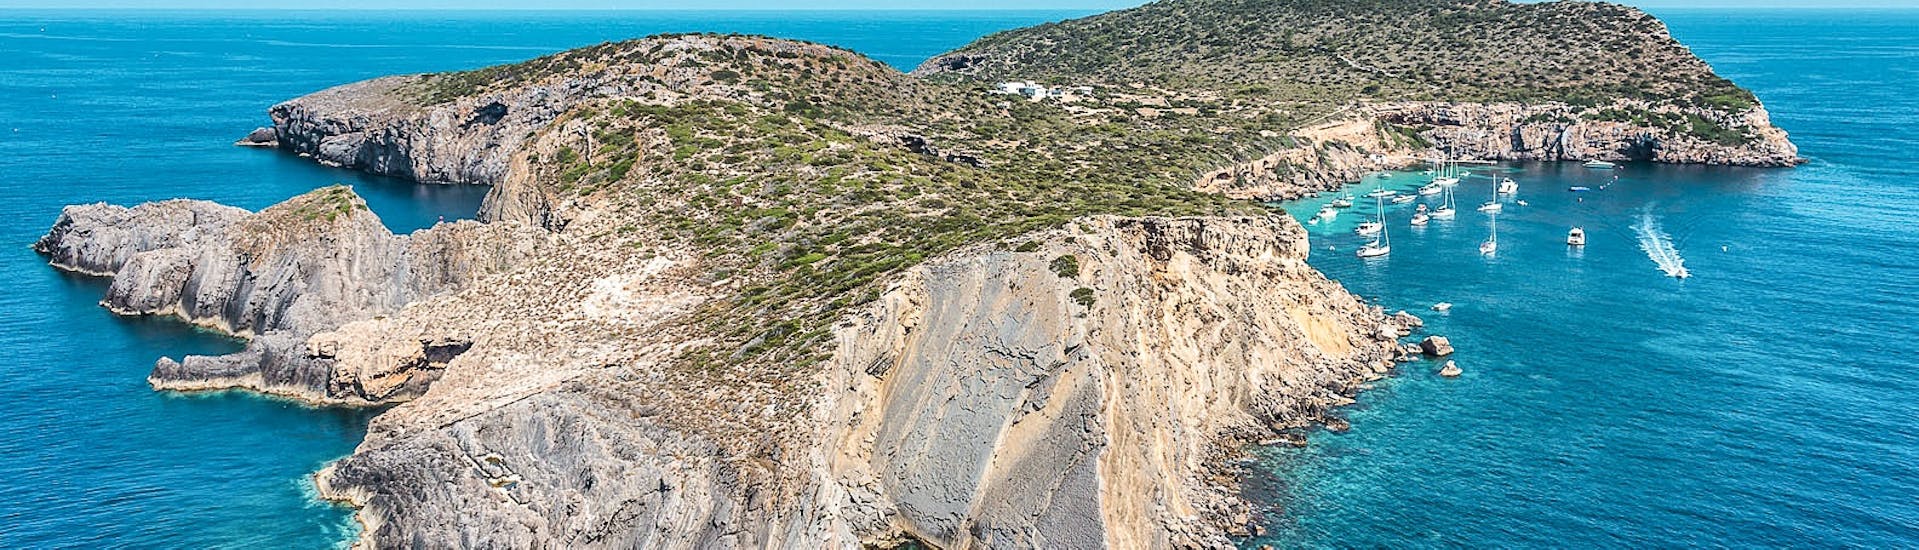 Vista aérea de la isla de Tagomago durante el tour en morto de agua en Ibiza a Cala Llonga, con Enjoy Watersports Ibiza.